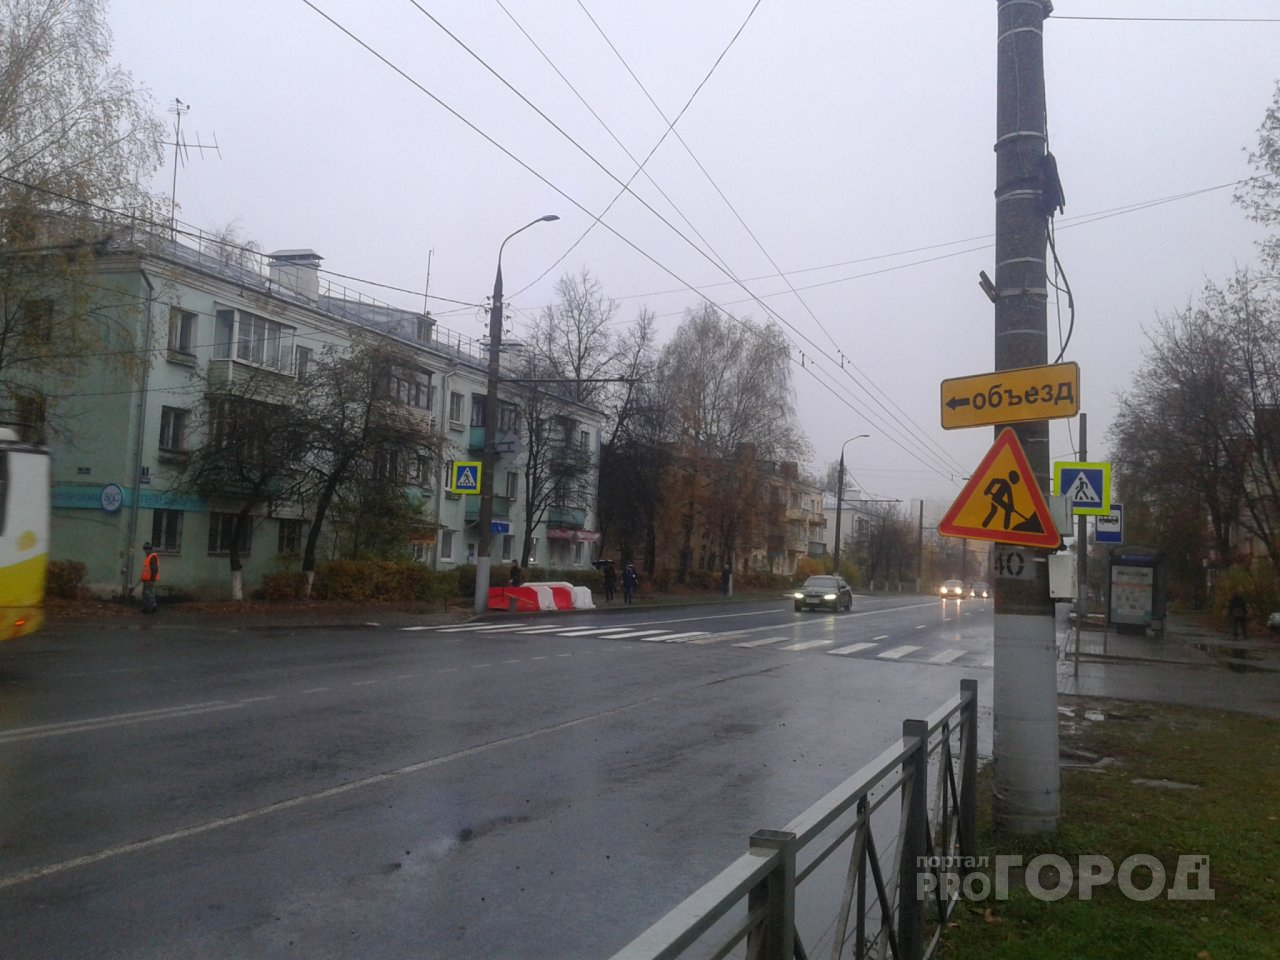 Во Владимире открыли улицу Чайковского. Как она выглядит после ремонта?